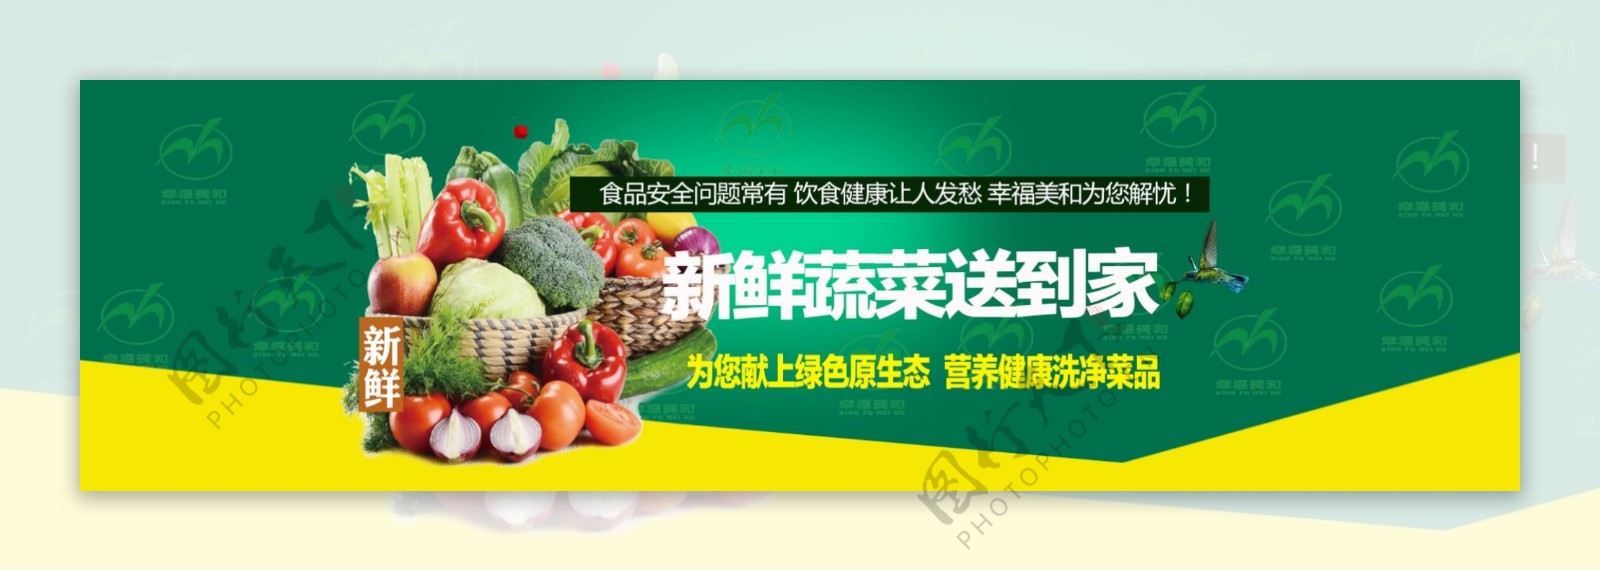 全屏海报蔬菜生鲜O2O配送平台